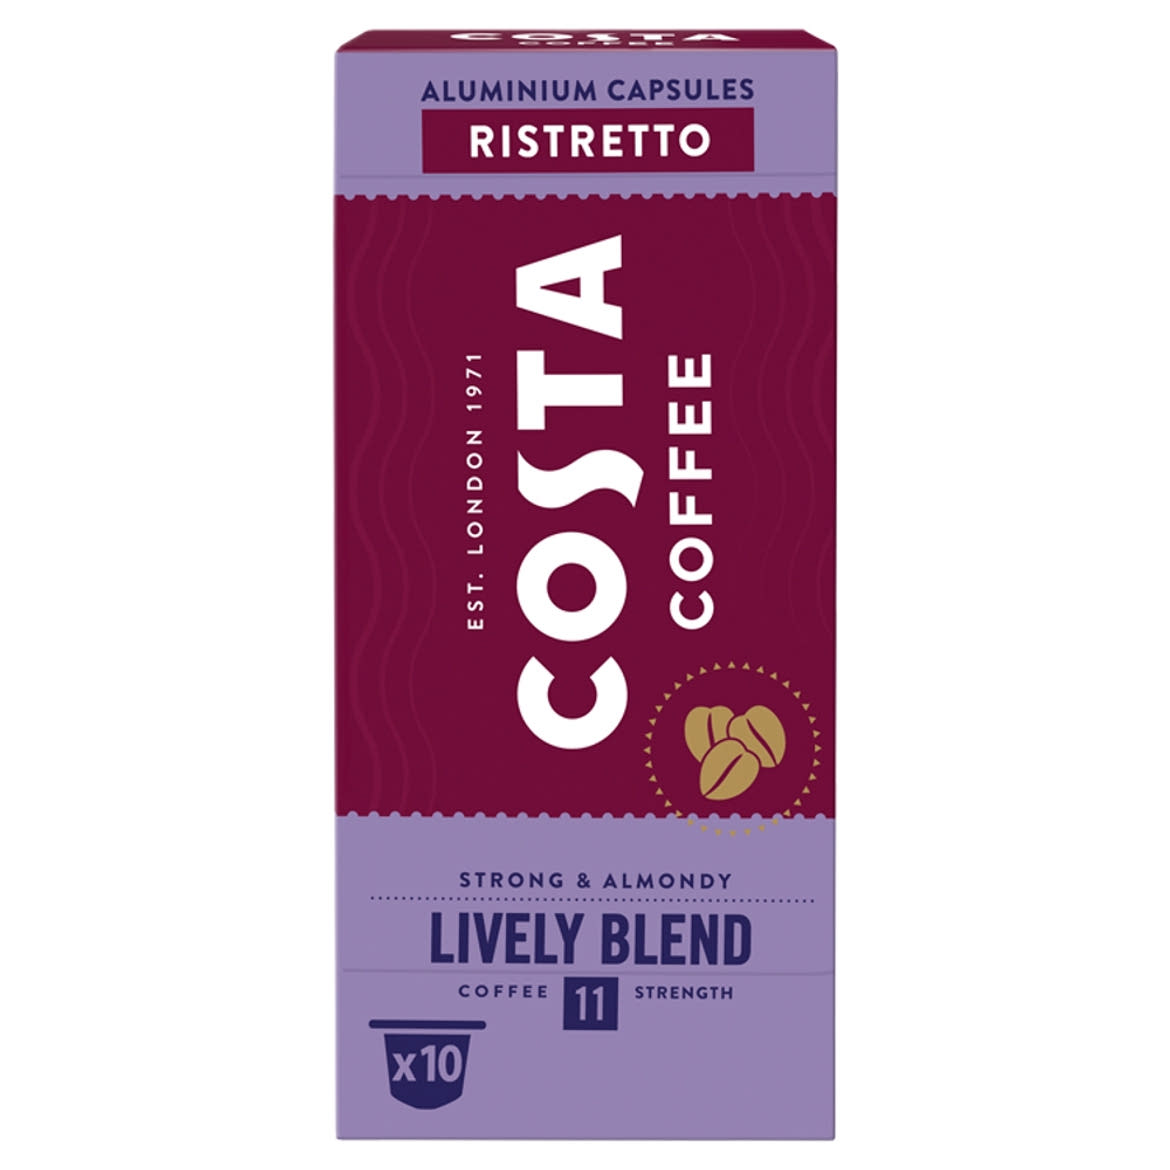 Costa Coffee Lively Blend Ristretto őrölt-pörkölt kávé kapszulában